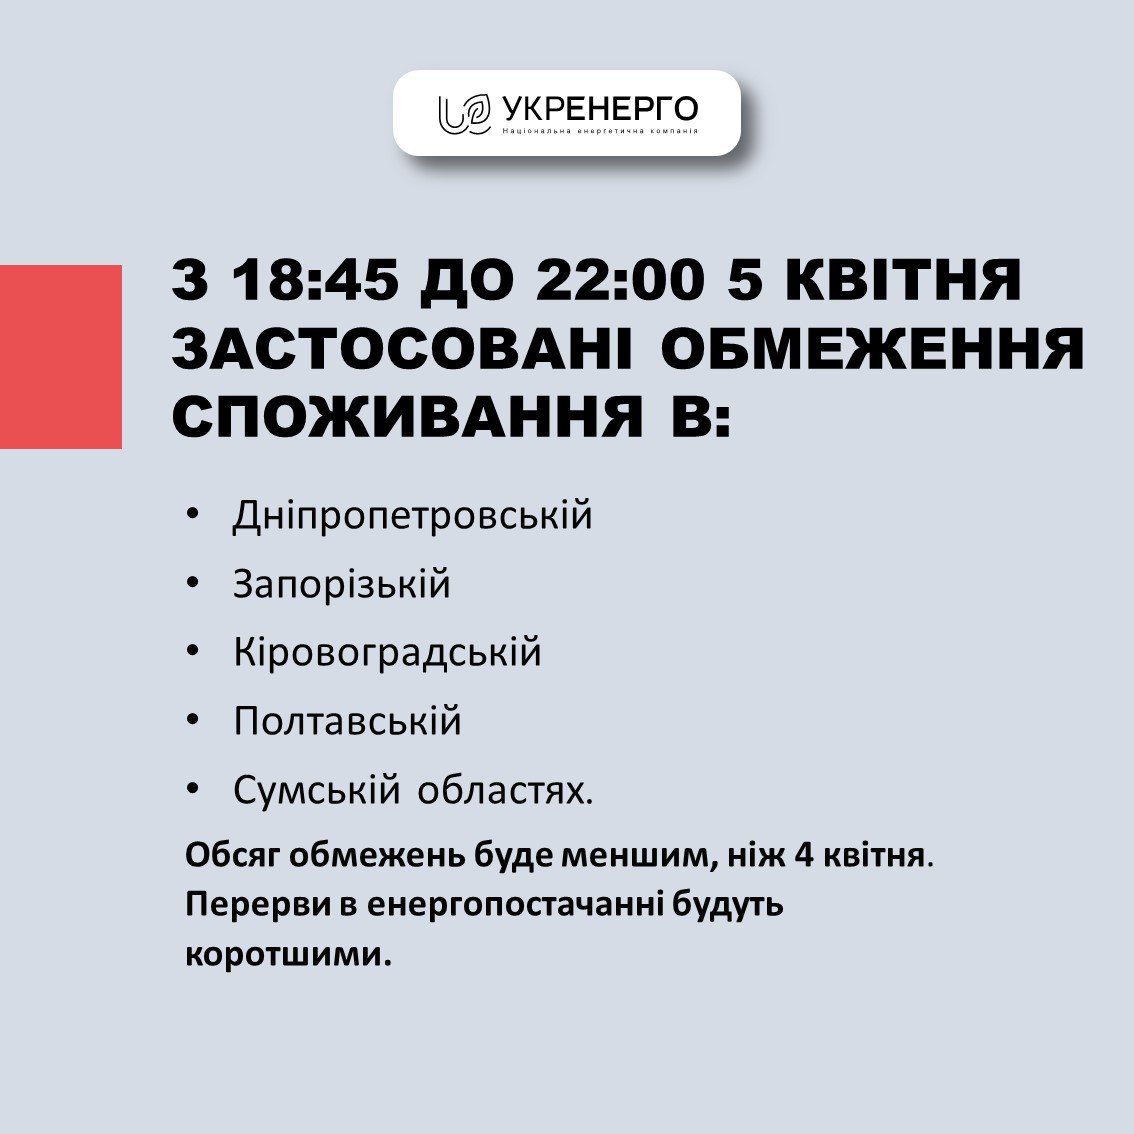 5 апреля ввела веерные отключения электричества с 18:45 до 22:00 в пяти областях Украины